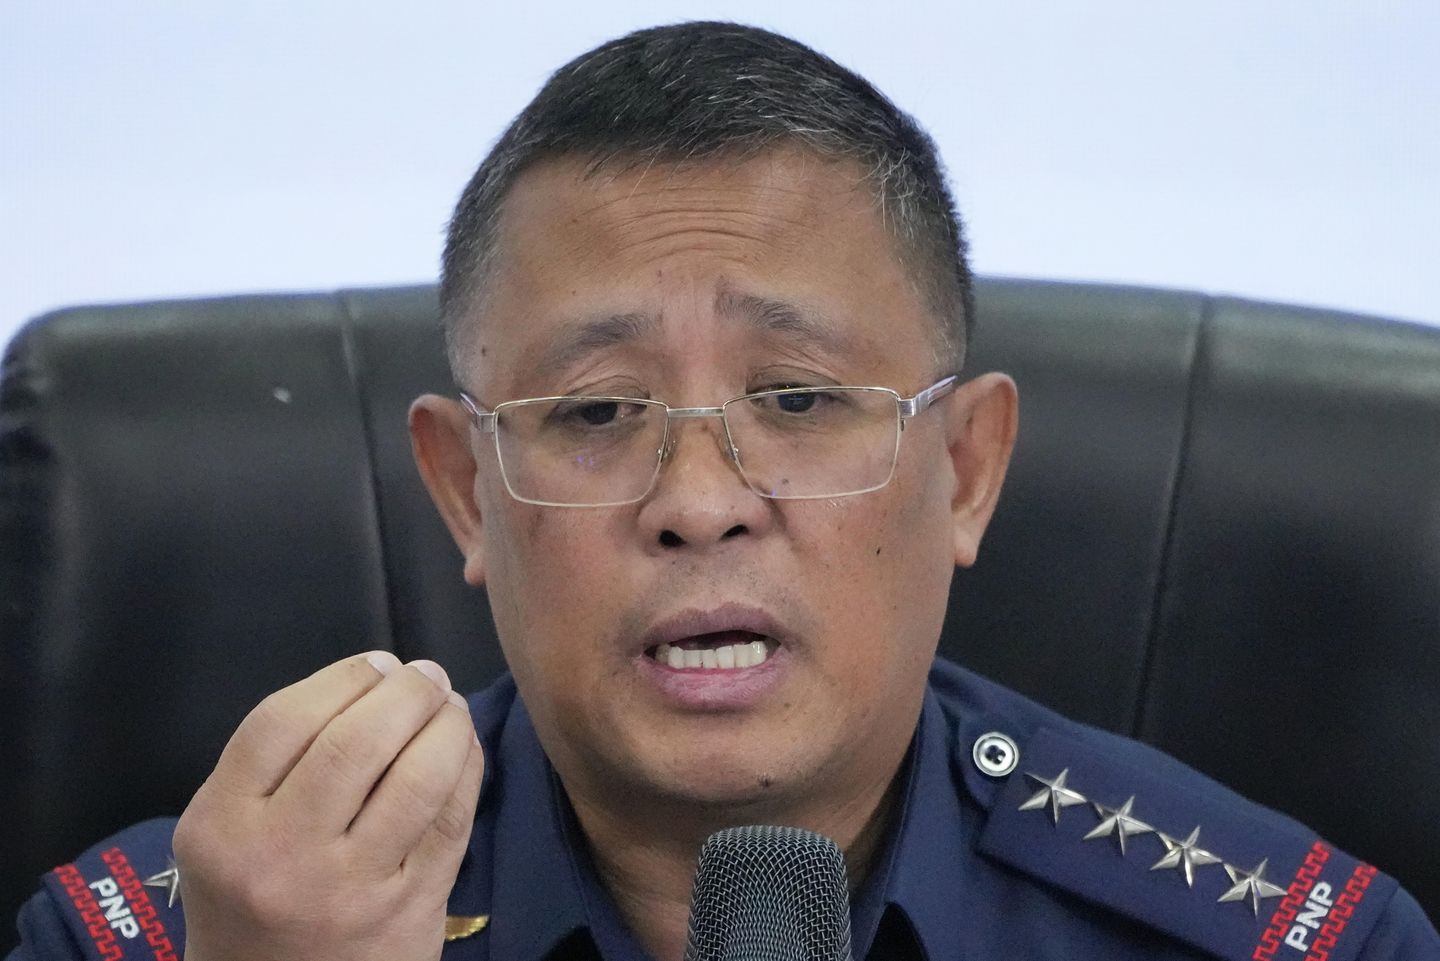 Filipin polis şefi uyuşturucu bağlantılı polisler yüzünden istifa etmeyi teklif etti